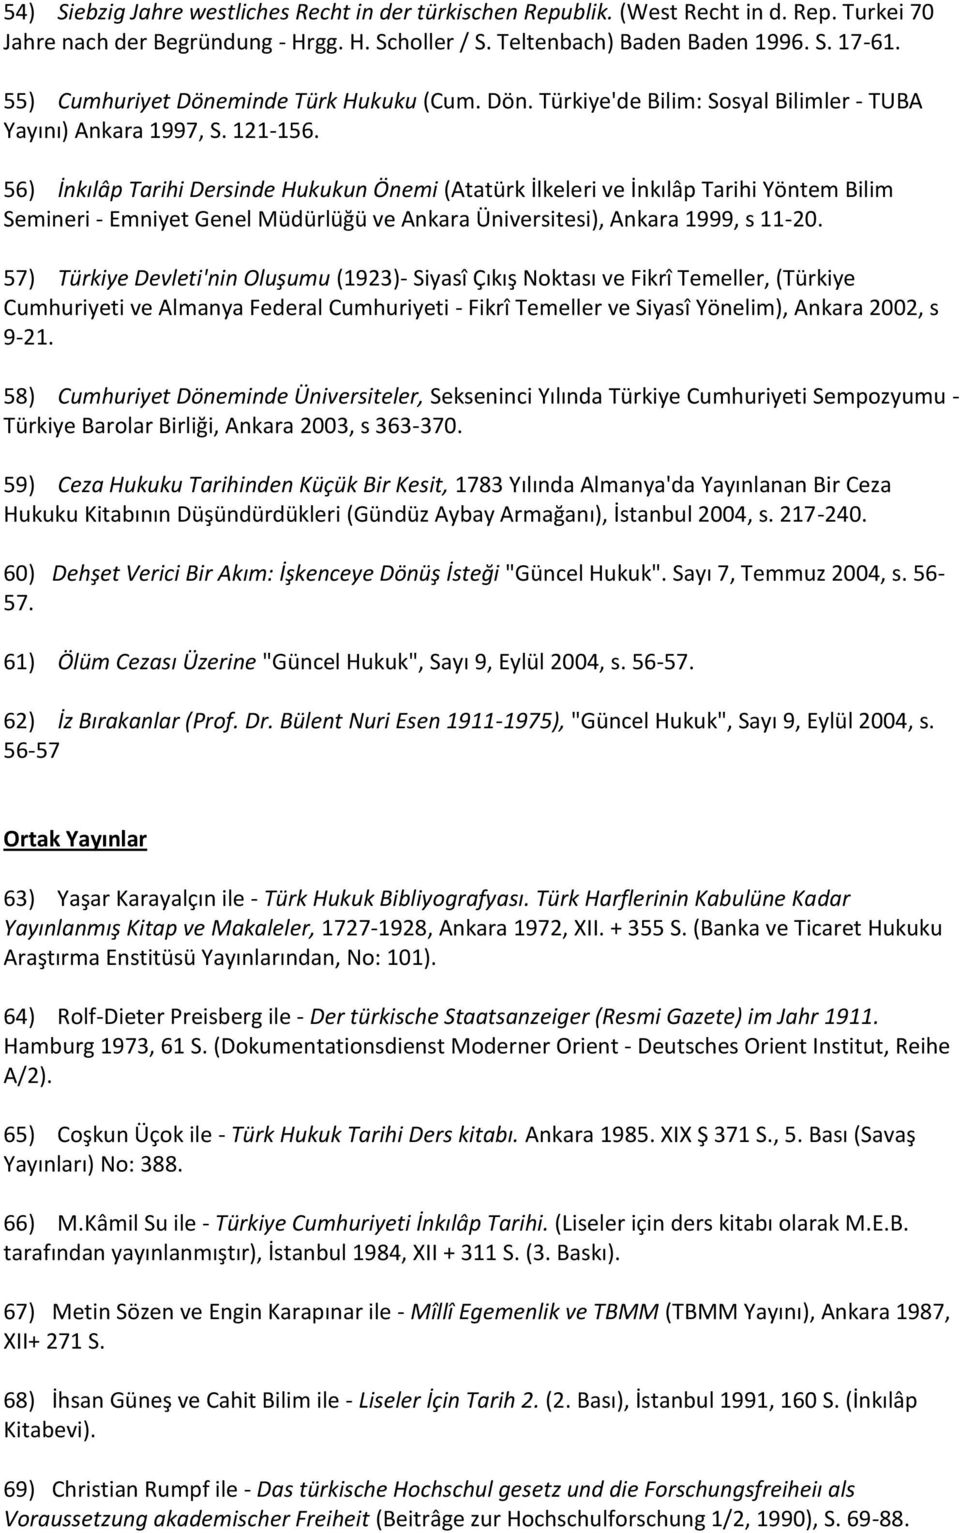 56) İnkılâp Tarihi Dersinde Hukukun Önemi (Atatürk İlkeleri ve İnkılâp Tarihi Yöntem Bilim Semineri - Emniyet Genel Müdürlüğü ve Ankara Üniversitesi), Ankara 1999, s 11-20.